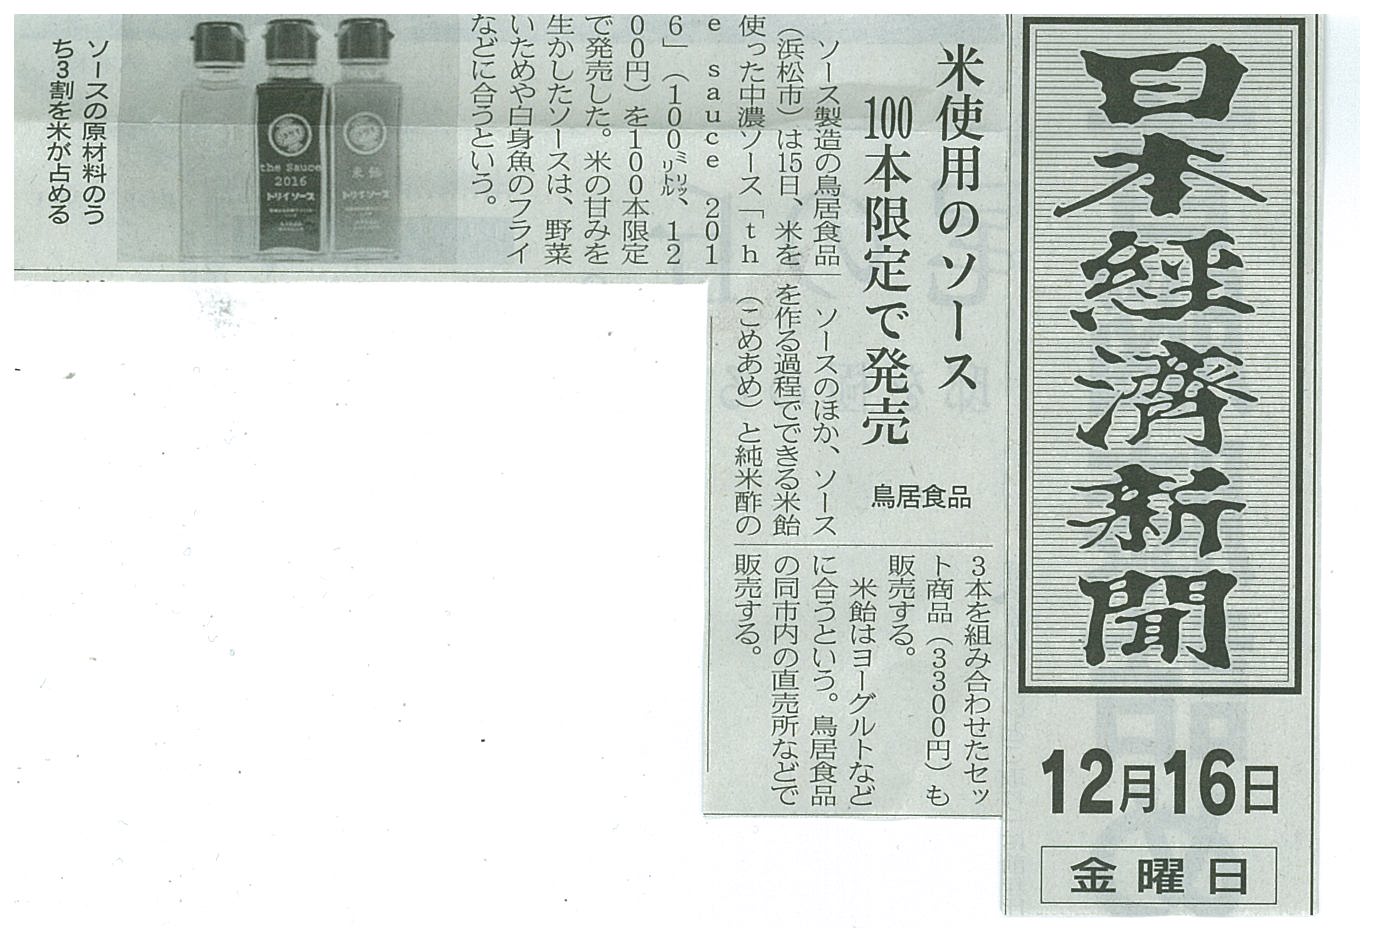 http://www.torii-sauce.jp/media/the%20sauce%202016%E6%97%A5%E6%9C%AC%E7%B5%8C%E6%B8%88%E6%96%B0%E8%81%9E.jpg